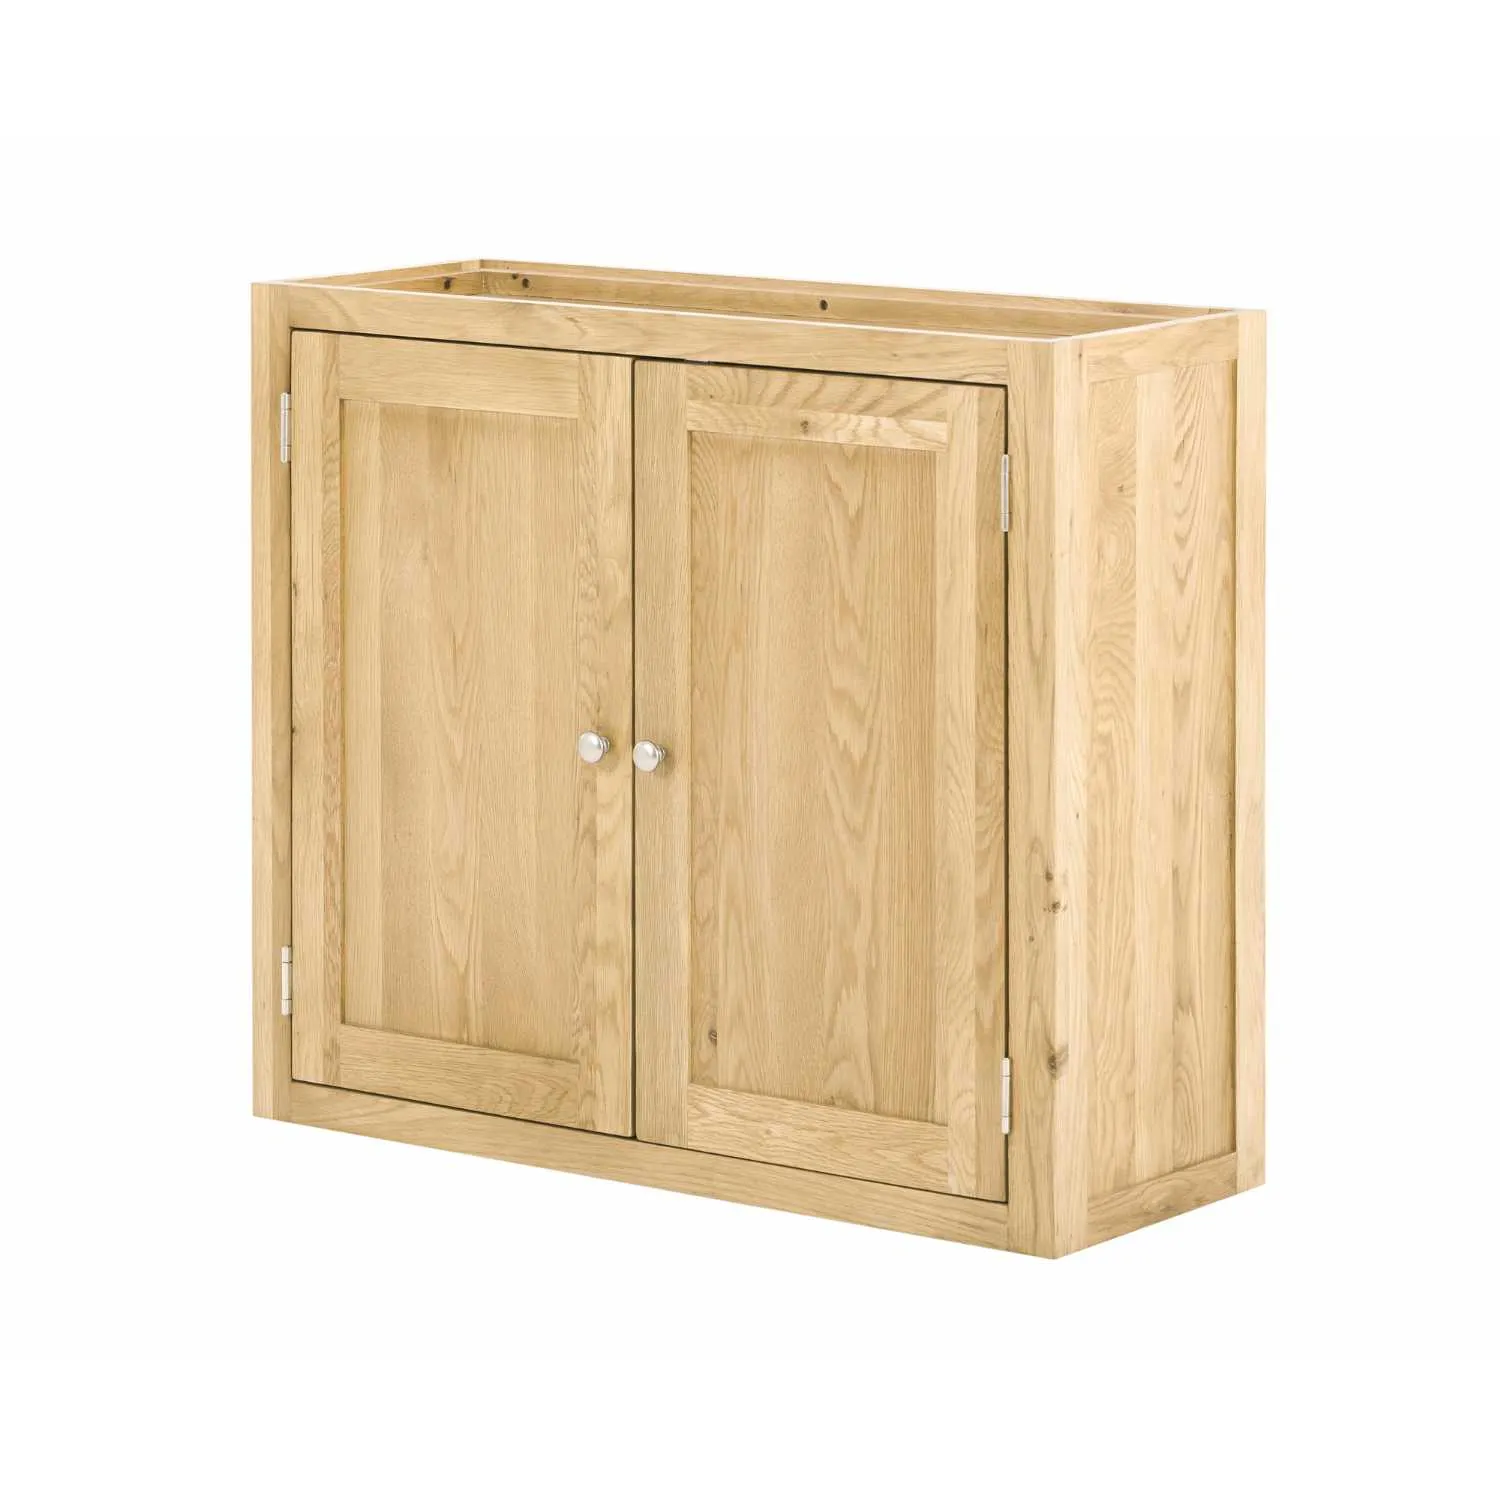 Handmade Oak Kitchens 2 Door Wall Cabinet